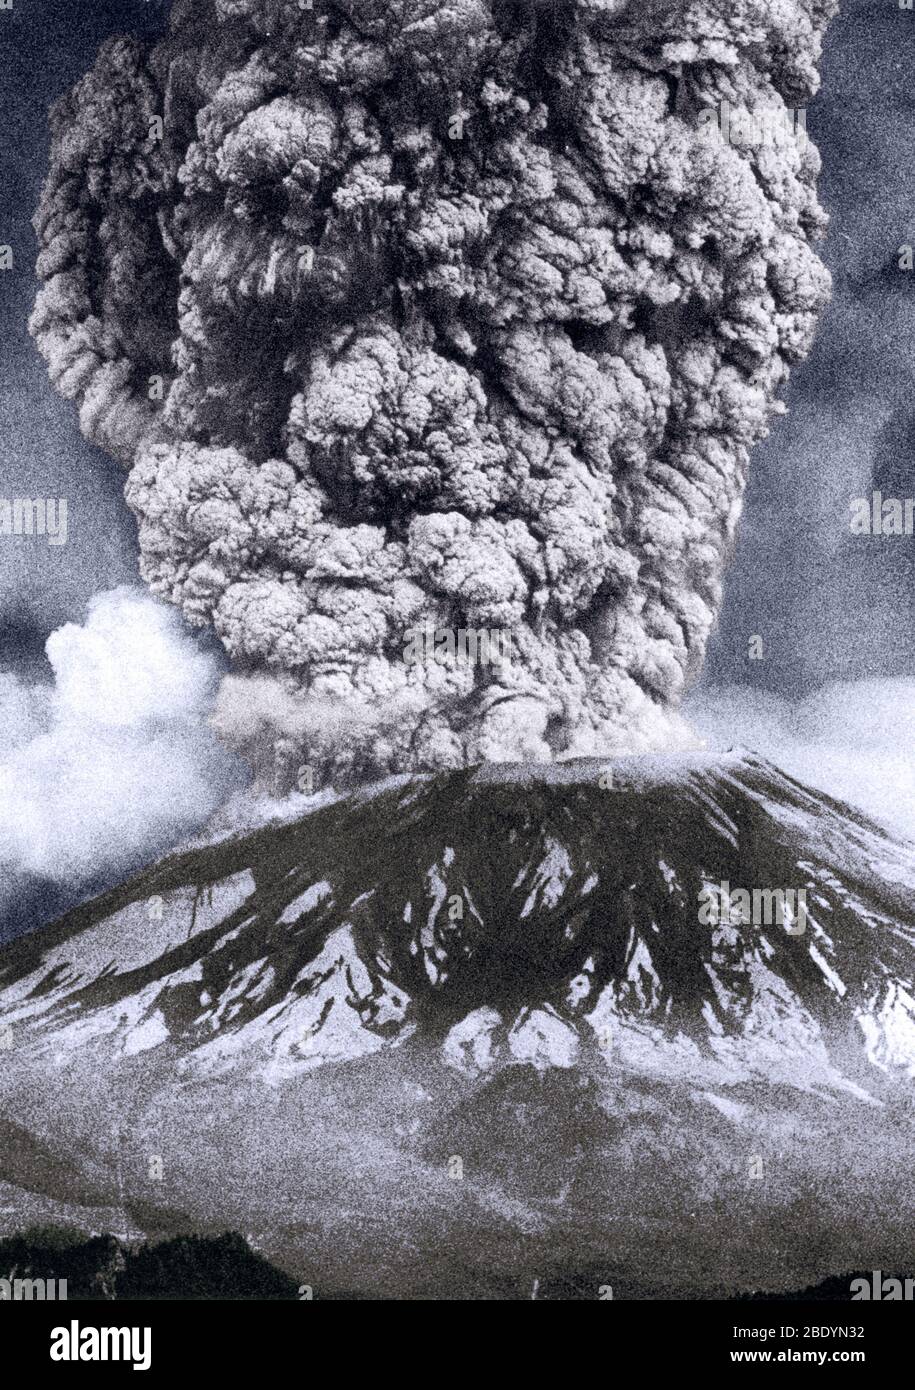 Mount St. Helens, Washington, ist der aktivste Vulkan in der Cascade Range. Das erste Anzeichen für Aktivität am Mount St. Helens im Frühjahr 1980 war eine Reihe von kleinen Erdbeben, die am 16. März begannen. Dampfexplosionen am 27. März sprengten einen Krater durch die Gipfeleiskappe des Vulkans. Innerhalb einer Woche war der Krater auf etwa 1,300 Fuß im Durchmesser gewachsen und zwei riesige Risssysteme überquerten das gesamte Gipfelgebiet. Bis Mai 17 hatten mehr als 10,000 Erdbeben den Vulkan erschüttert und die Nordflanke war mindestens 450 Fuß nach außen gewachsen, um eine spürbare Beule zu bilden. Solch dramatische Deformation des Vol Stockfoto